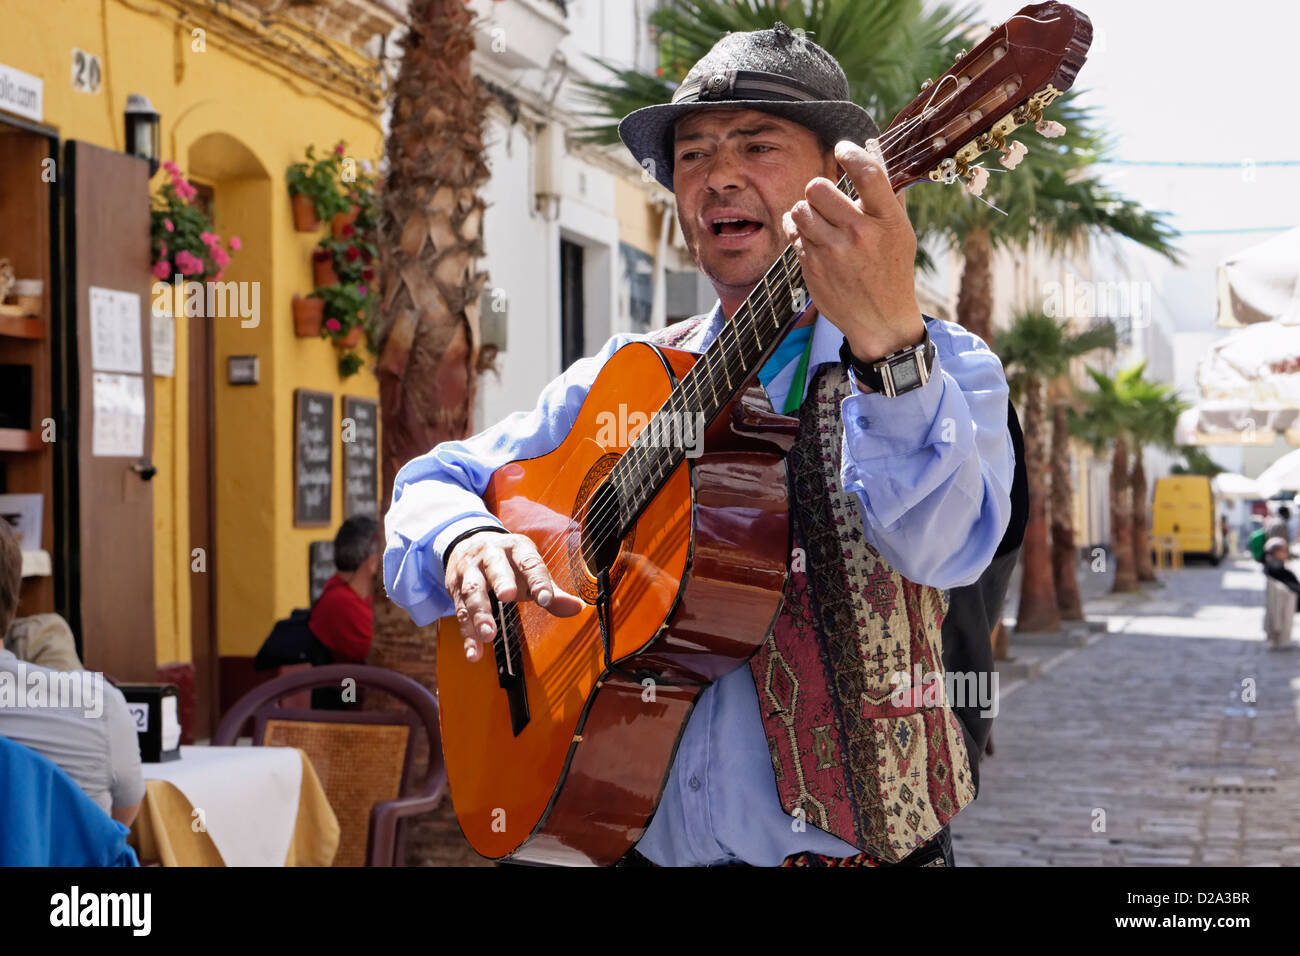 Cadix espagne flamenco guitar player street performer Banque D'Images